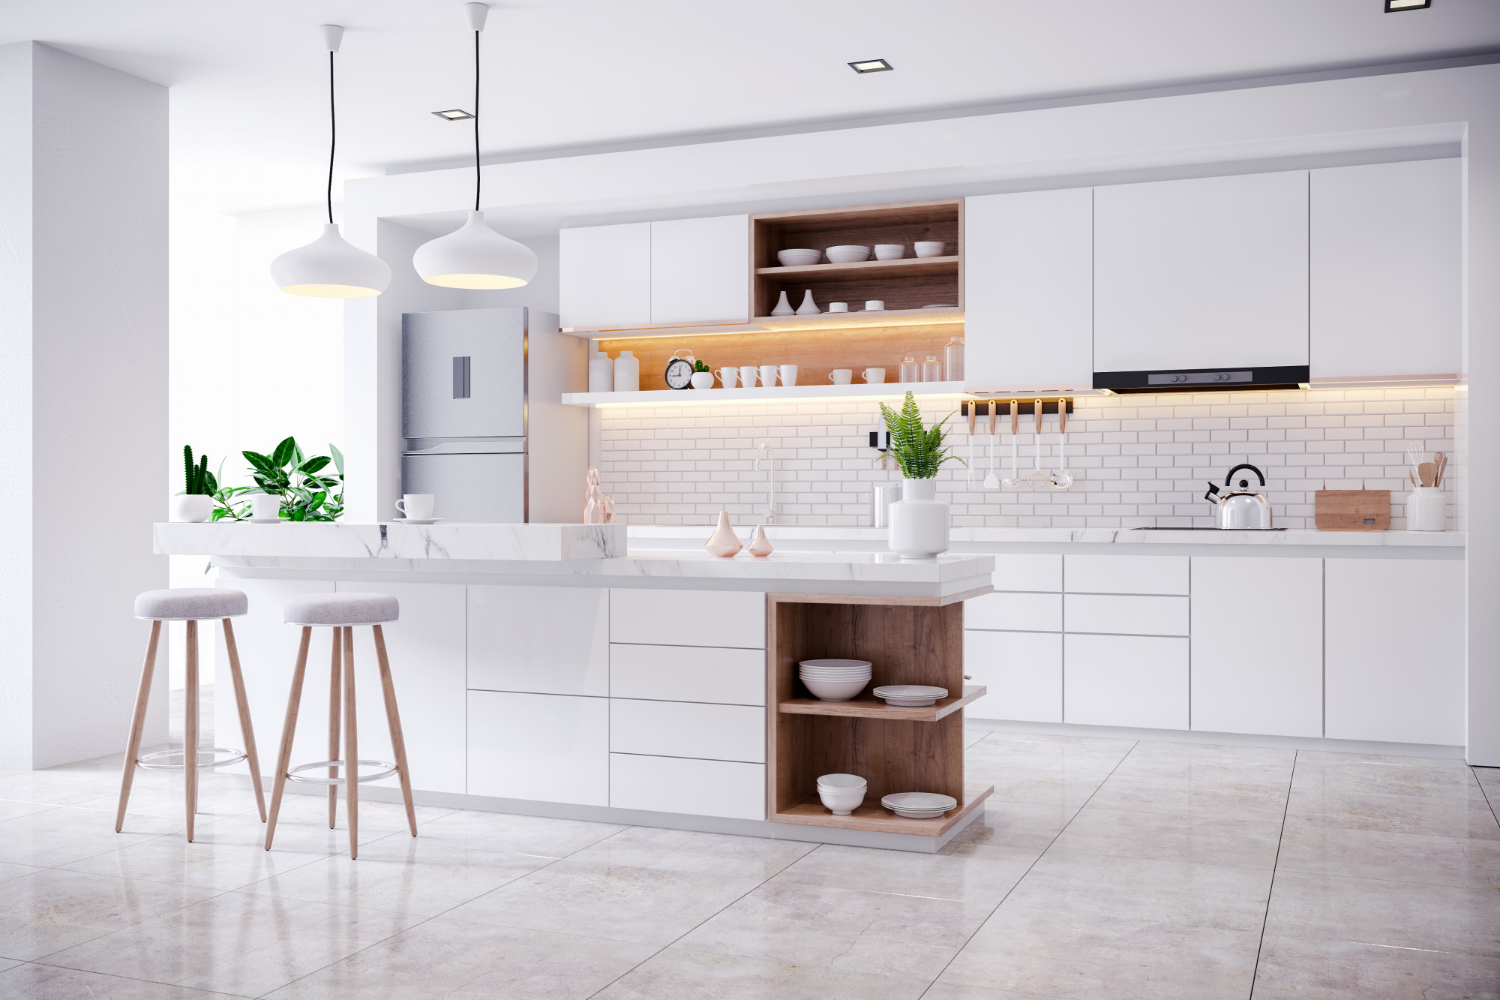 Seperti kanvas, kamu bisa padu padankan warna putih dengan banyak jenis interior kitchen.